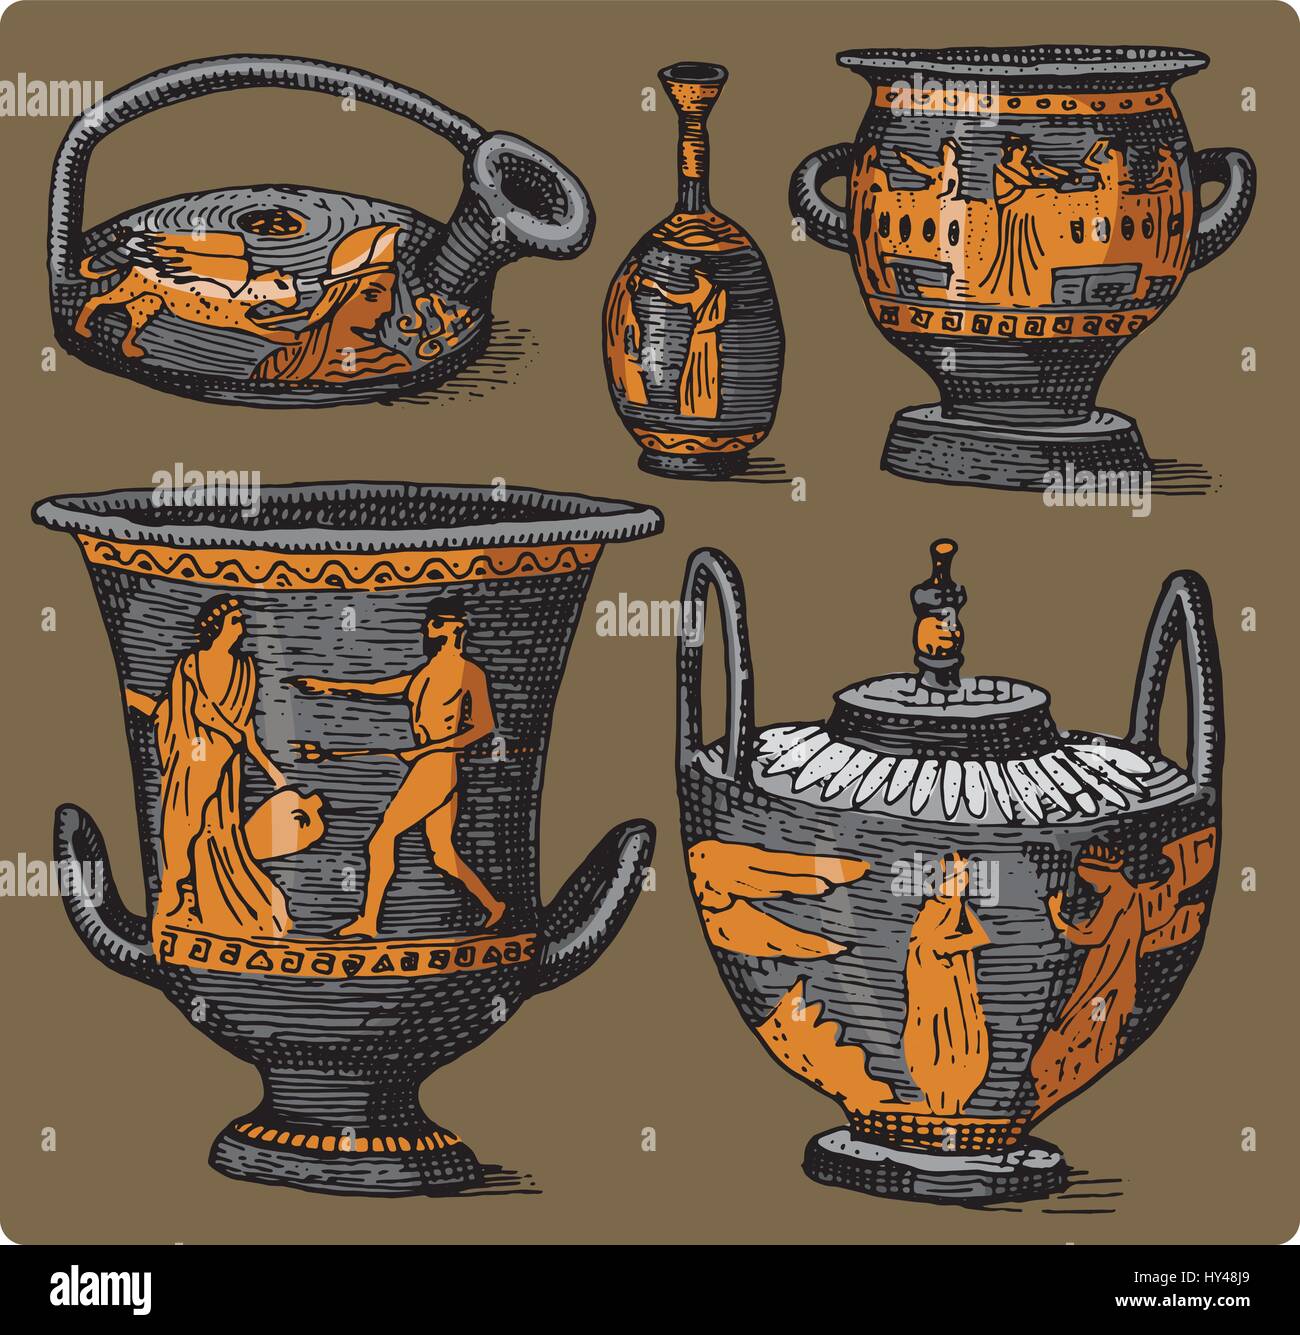 La Grèce antique, l'amphore antique set, vase avec des scènes de vie vintage, gravée au croquis dessinés à la main, ou en bois de style ancien, coupe à retro Illustration de Vecteur